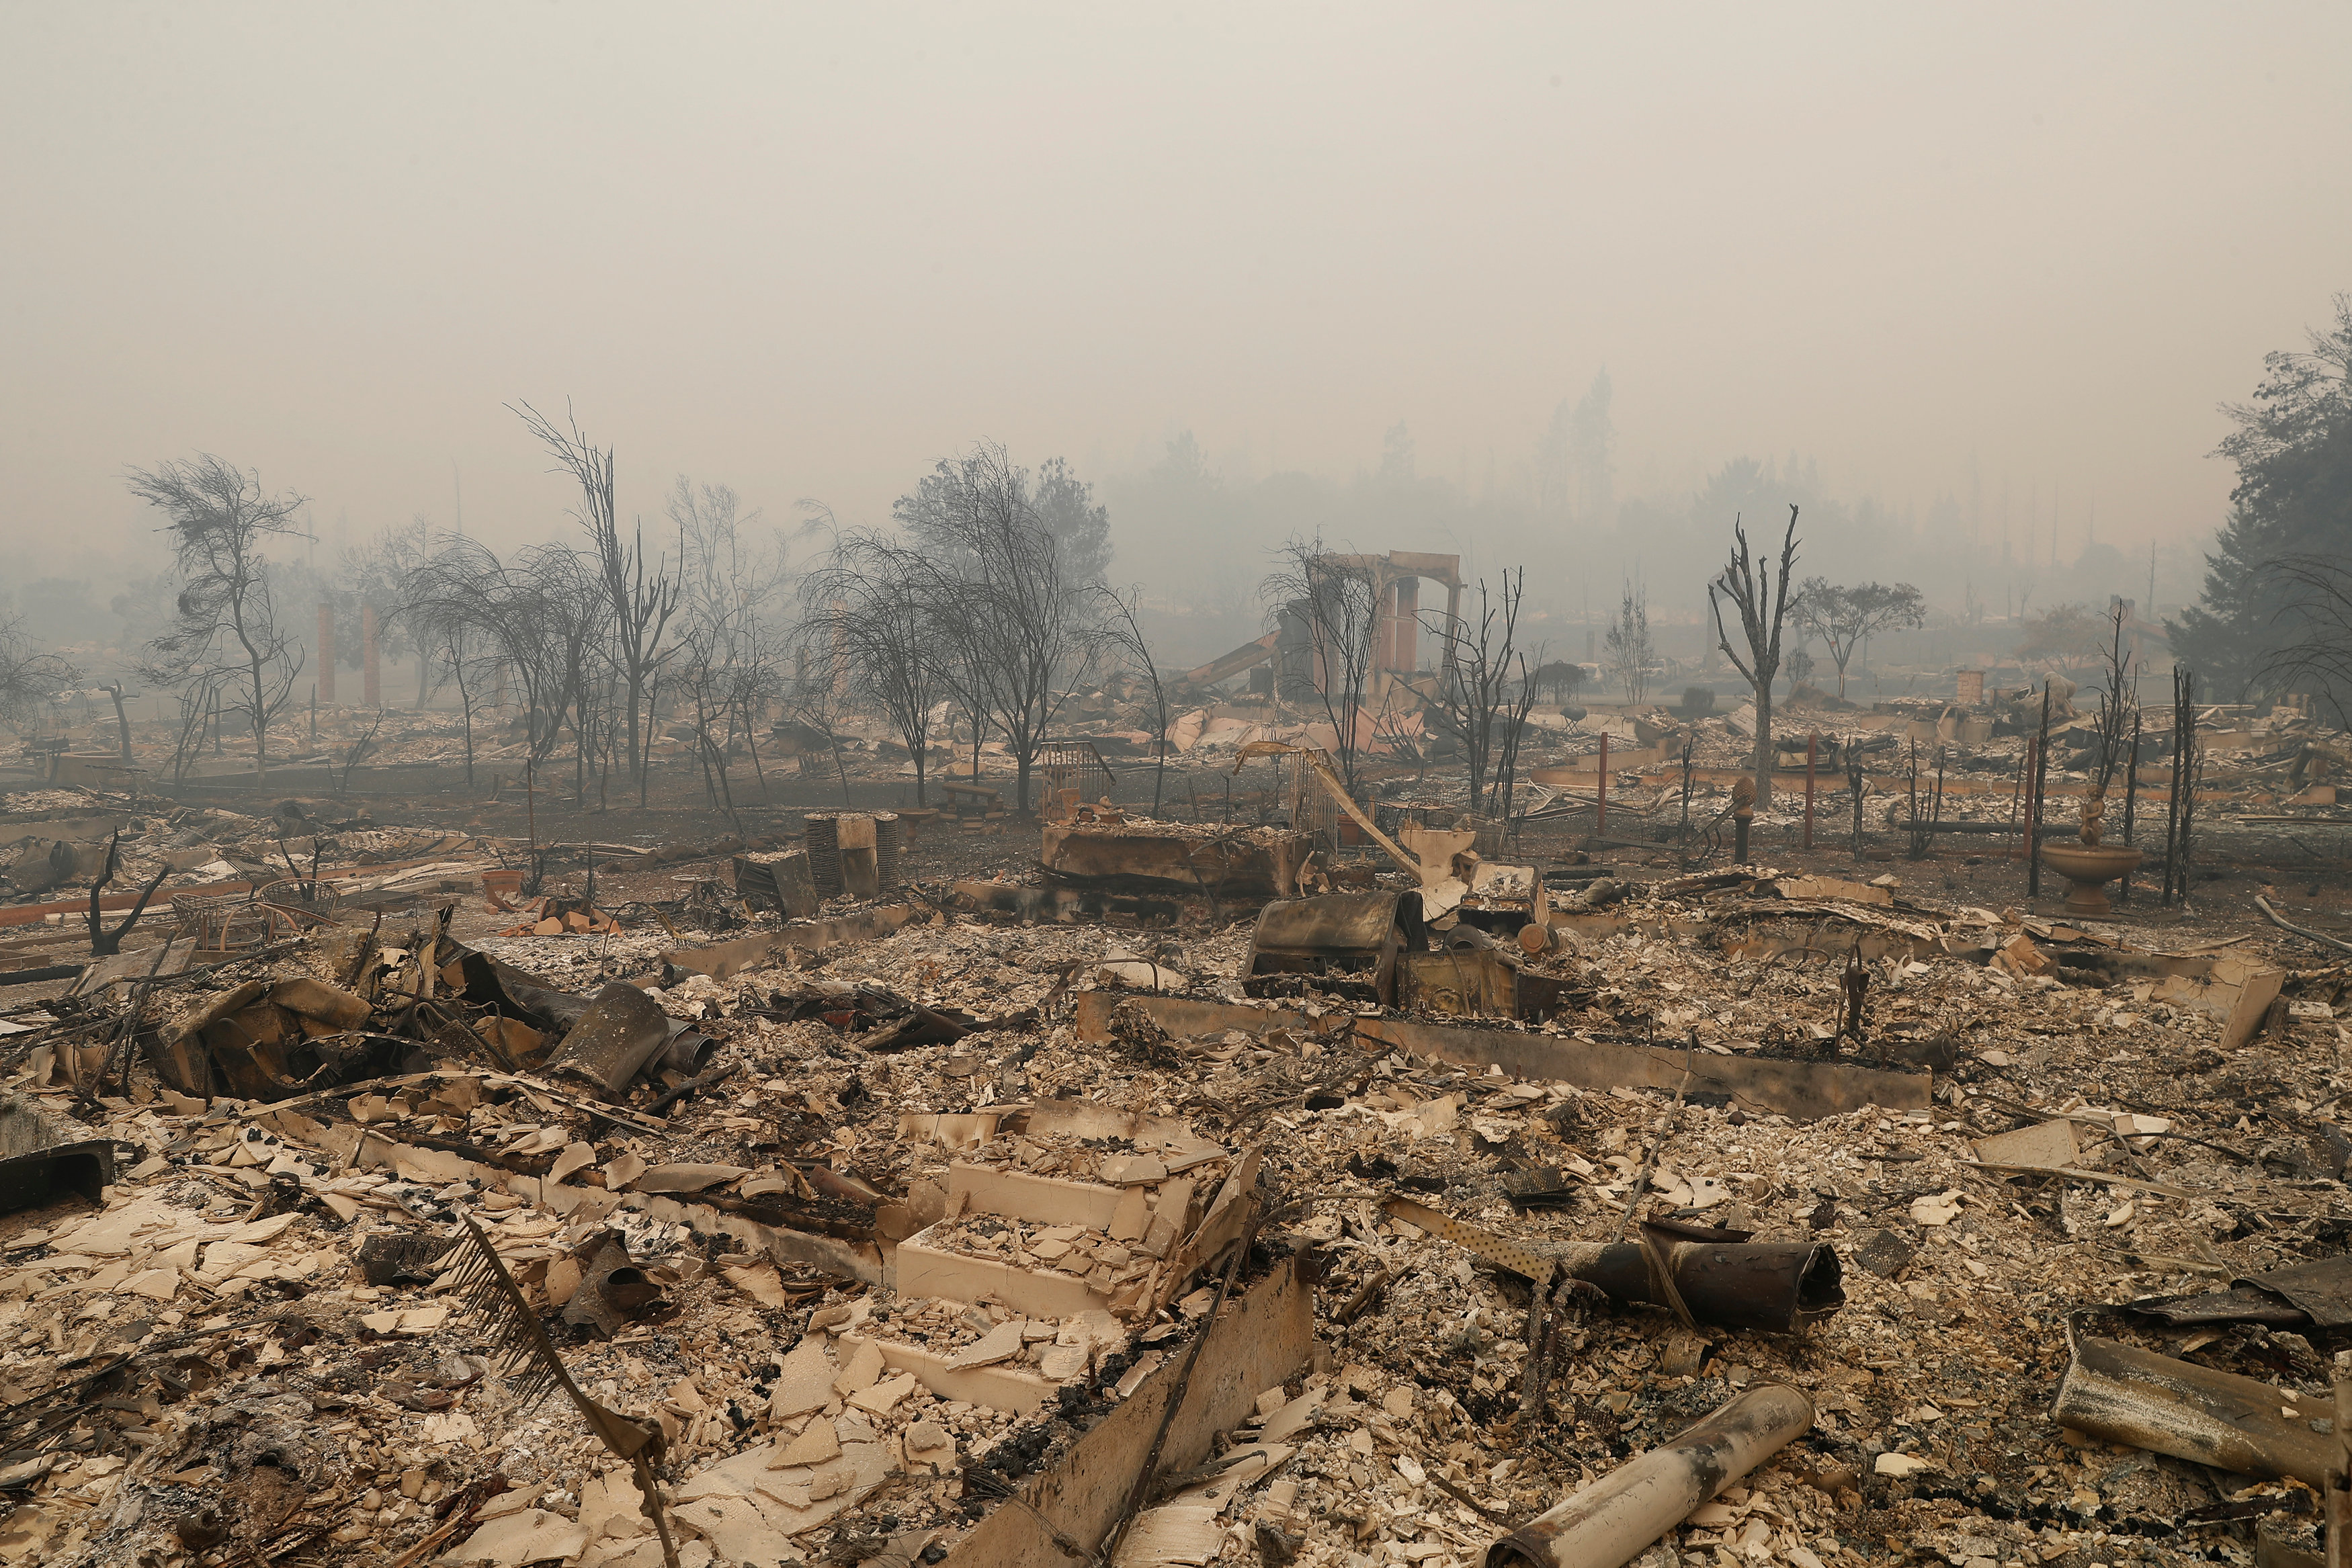 In pictures: Blazes blacken 115,000 acres land in California